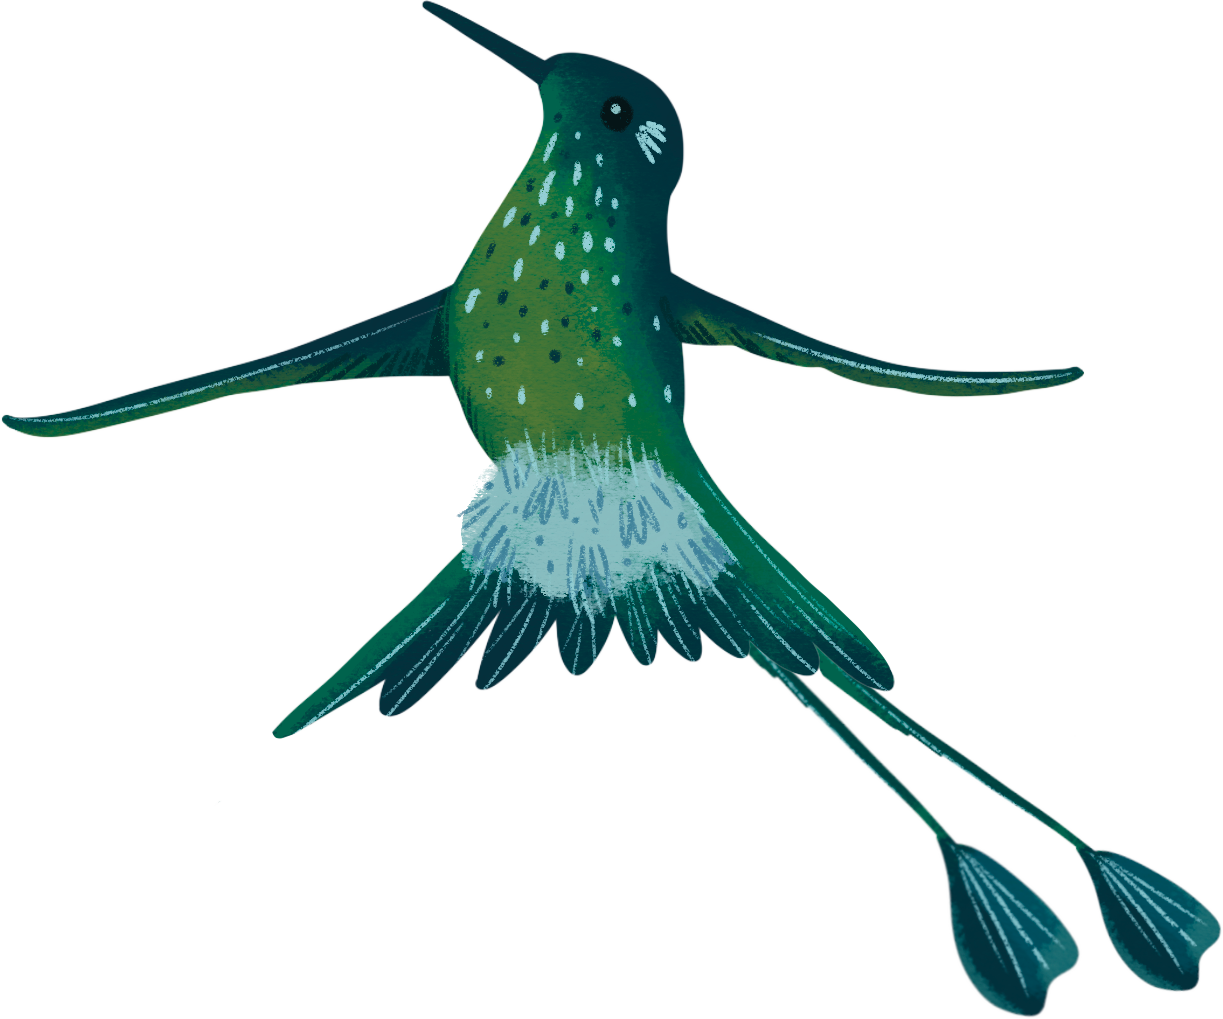 Illustrated hummingbird